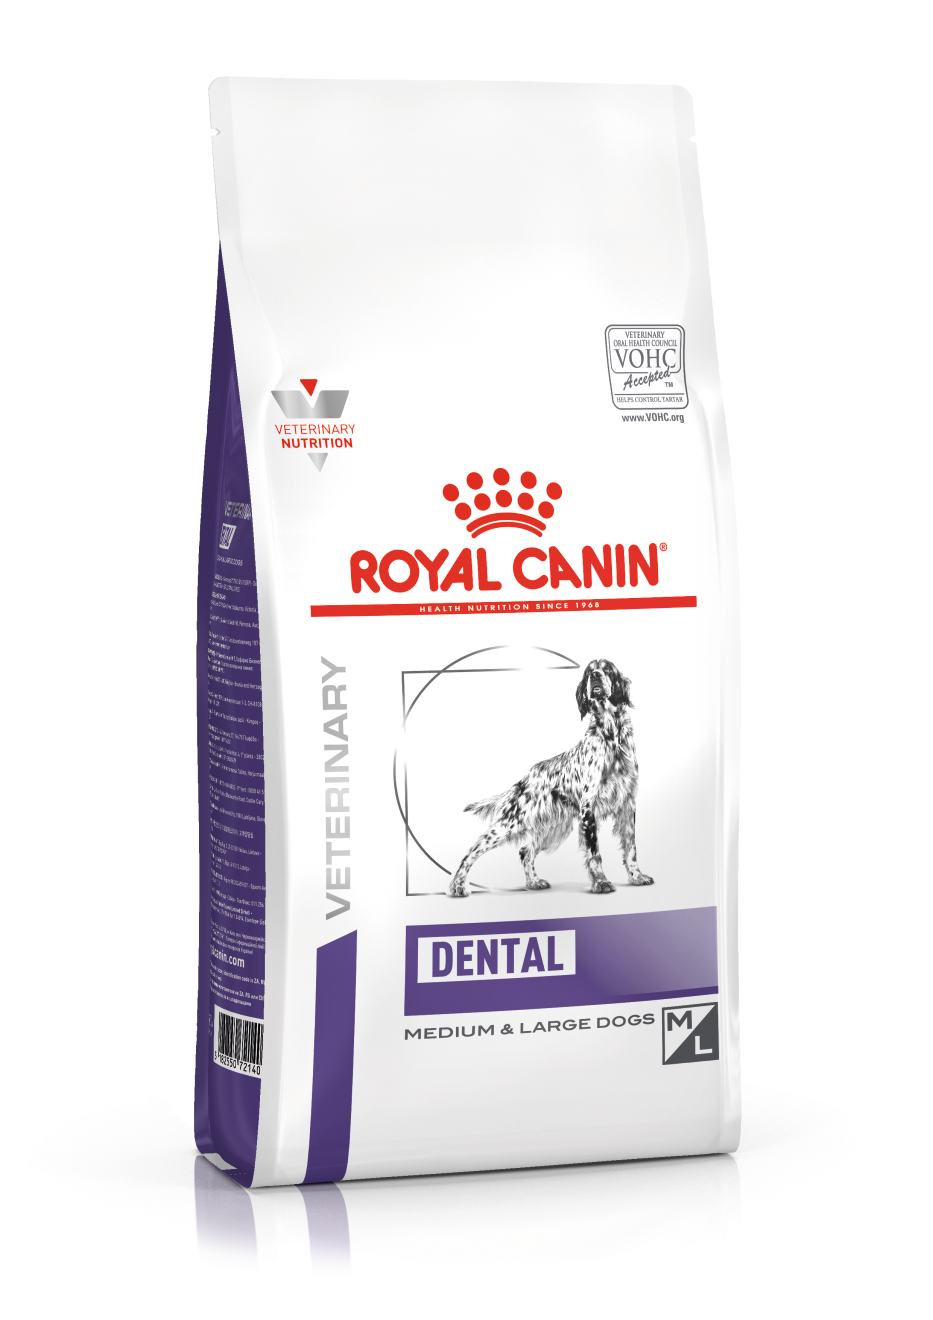 Royal Canin Dental hond 1 x  6 kg